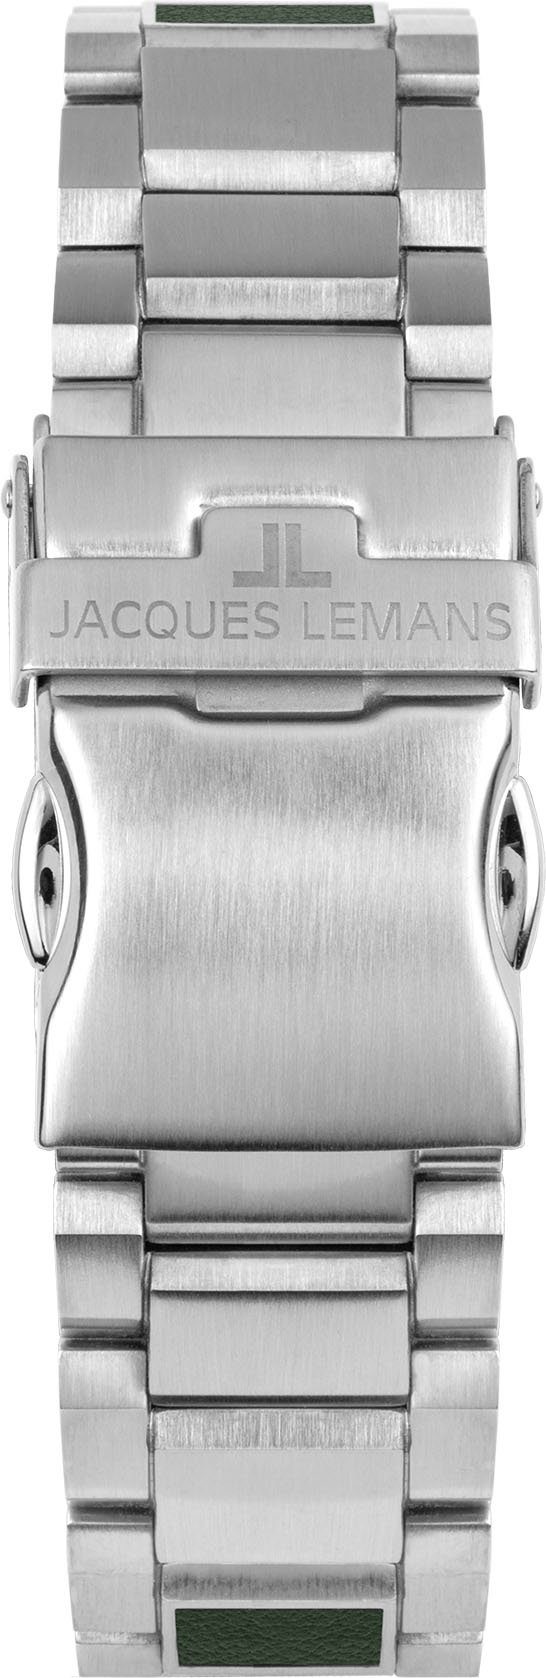 Jacques Lemans Eco 1-2115G Chronograph Apple, Solar Power